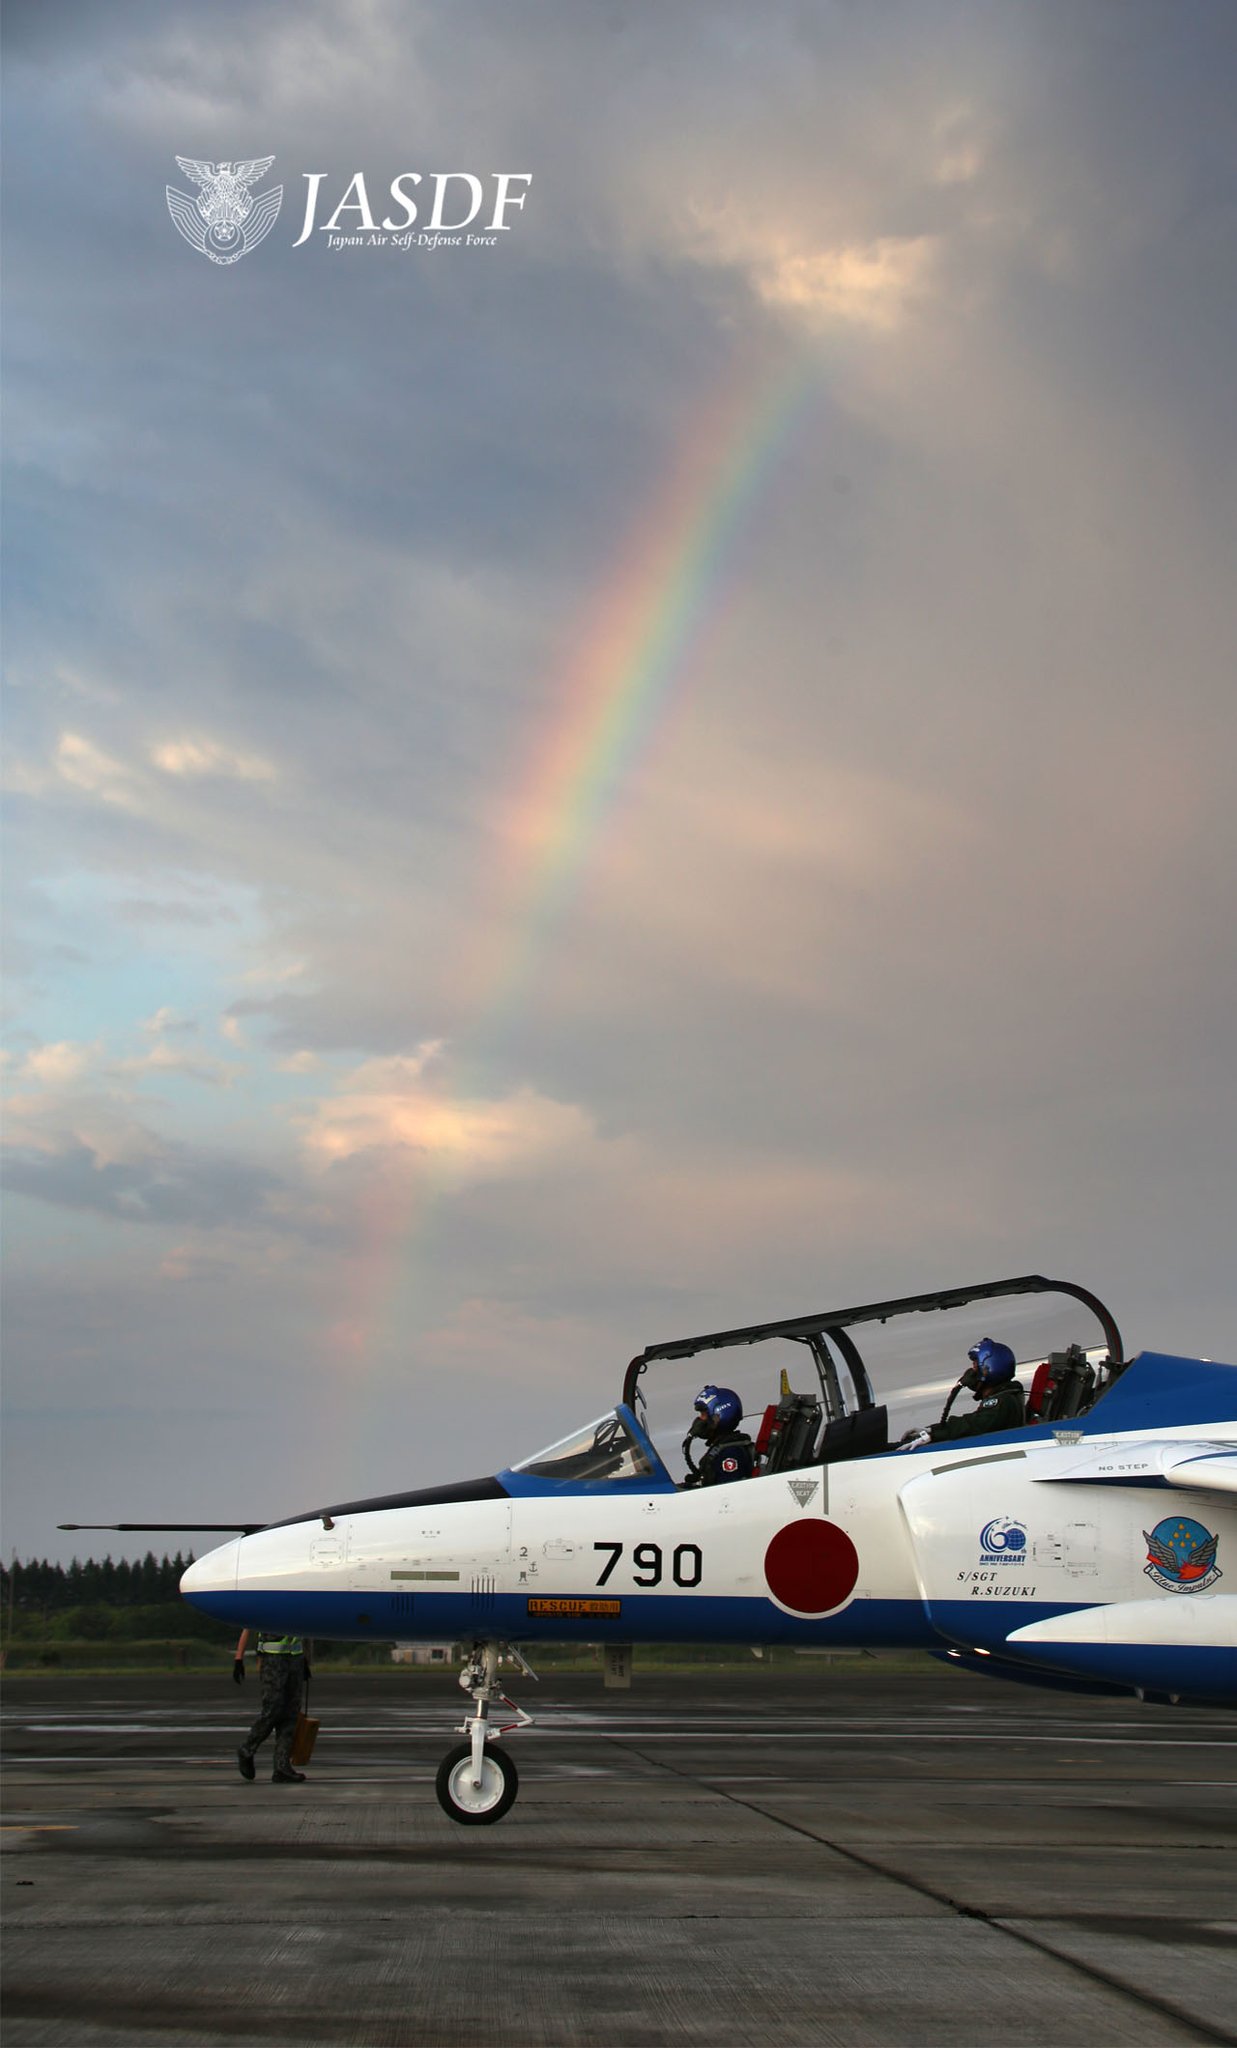 防衛省 航空自衛隊 Twitterren 空幕広報室 です 虹 をバックにブルーインパルスの壁紙 東から 雨雲よけて 入間基地 空には虹が お出迎え ブルーと虹が 幸せ運ぶ 見るたび気分 上がるかも 空自 ブルーインパルス 松島基地 壁紙 待ち受け